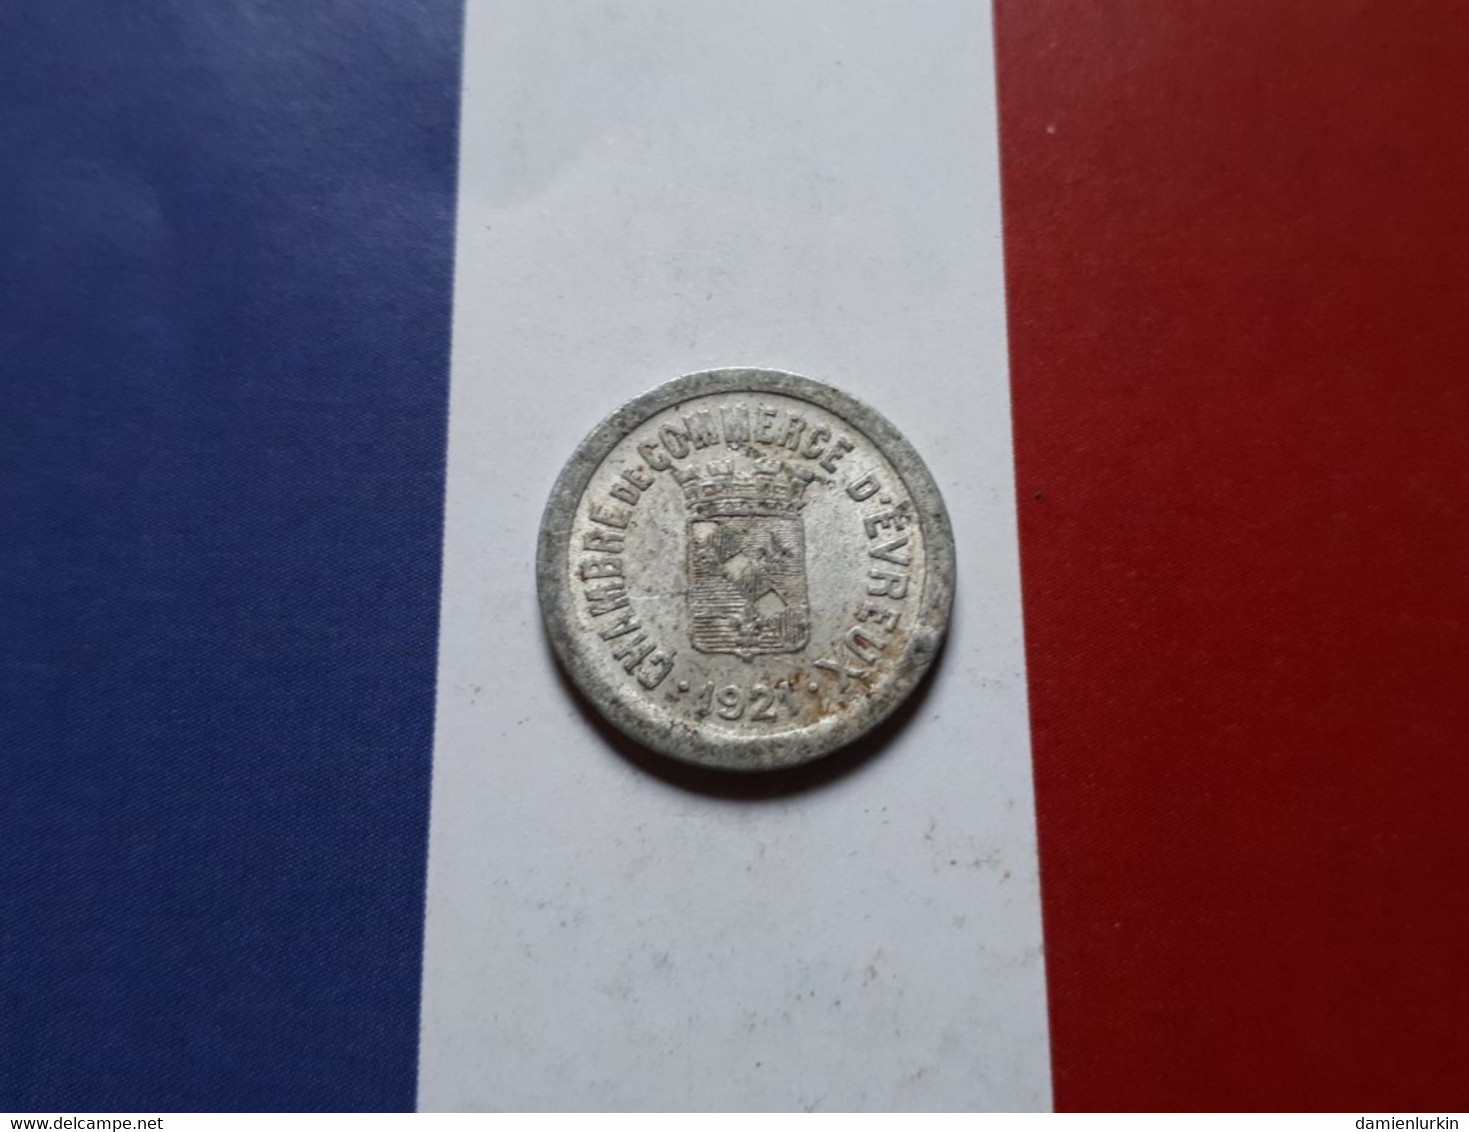 FRANCE EVREUX 5 CENTIMES NECESSITE 1921 CHAMBRE DE COMMERCE FRAPPE MONNAIE - Monétaires / De Nécessité